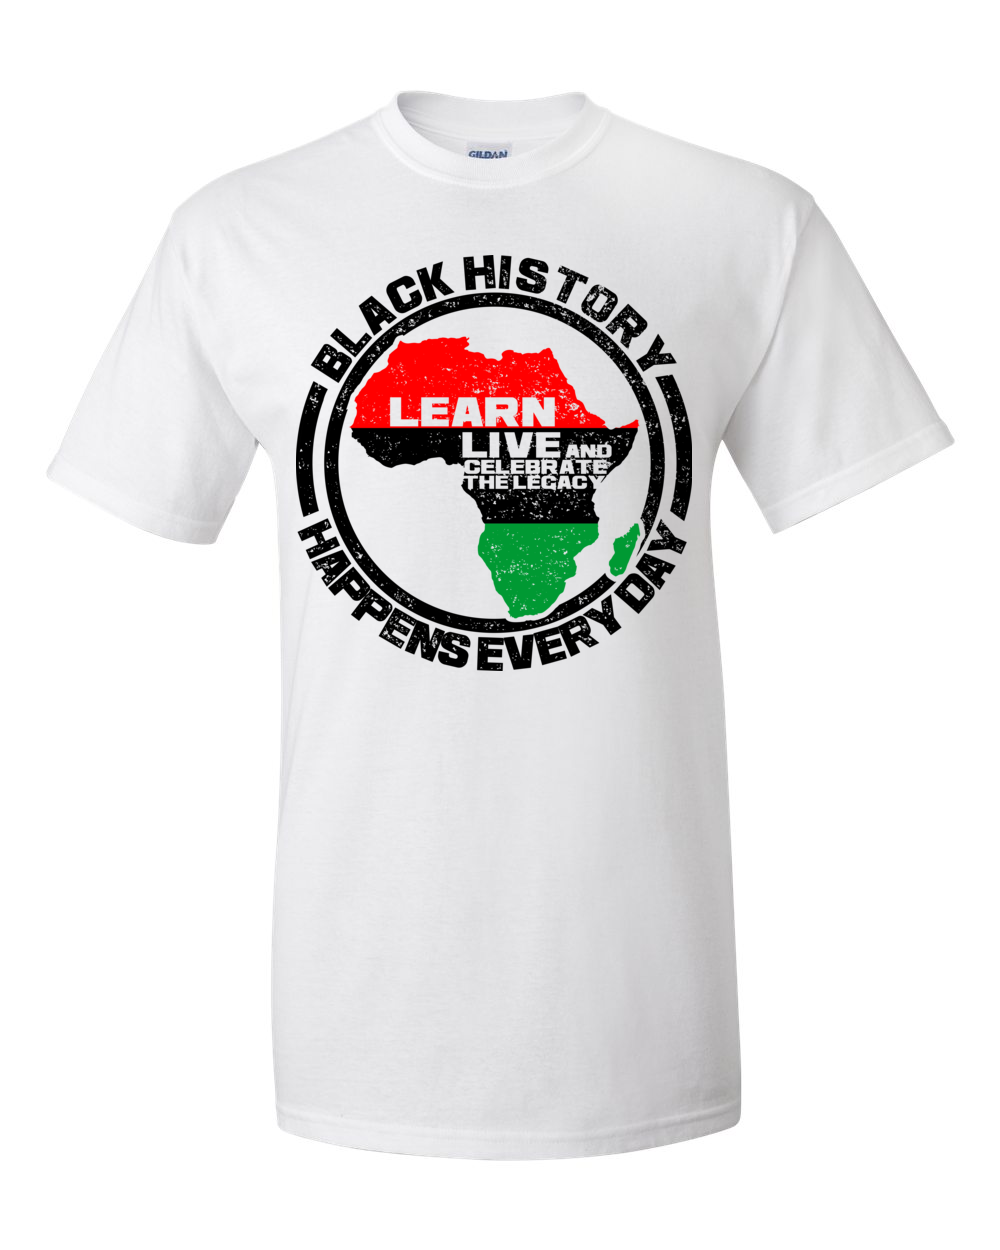 2 of 6: Black History Happens Everyday Short Sleeve Unisex T-Shirt-T-Shirt-RBG Forever-Small-White-The Black Art Depot